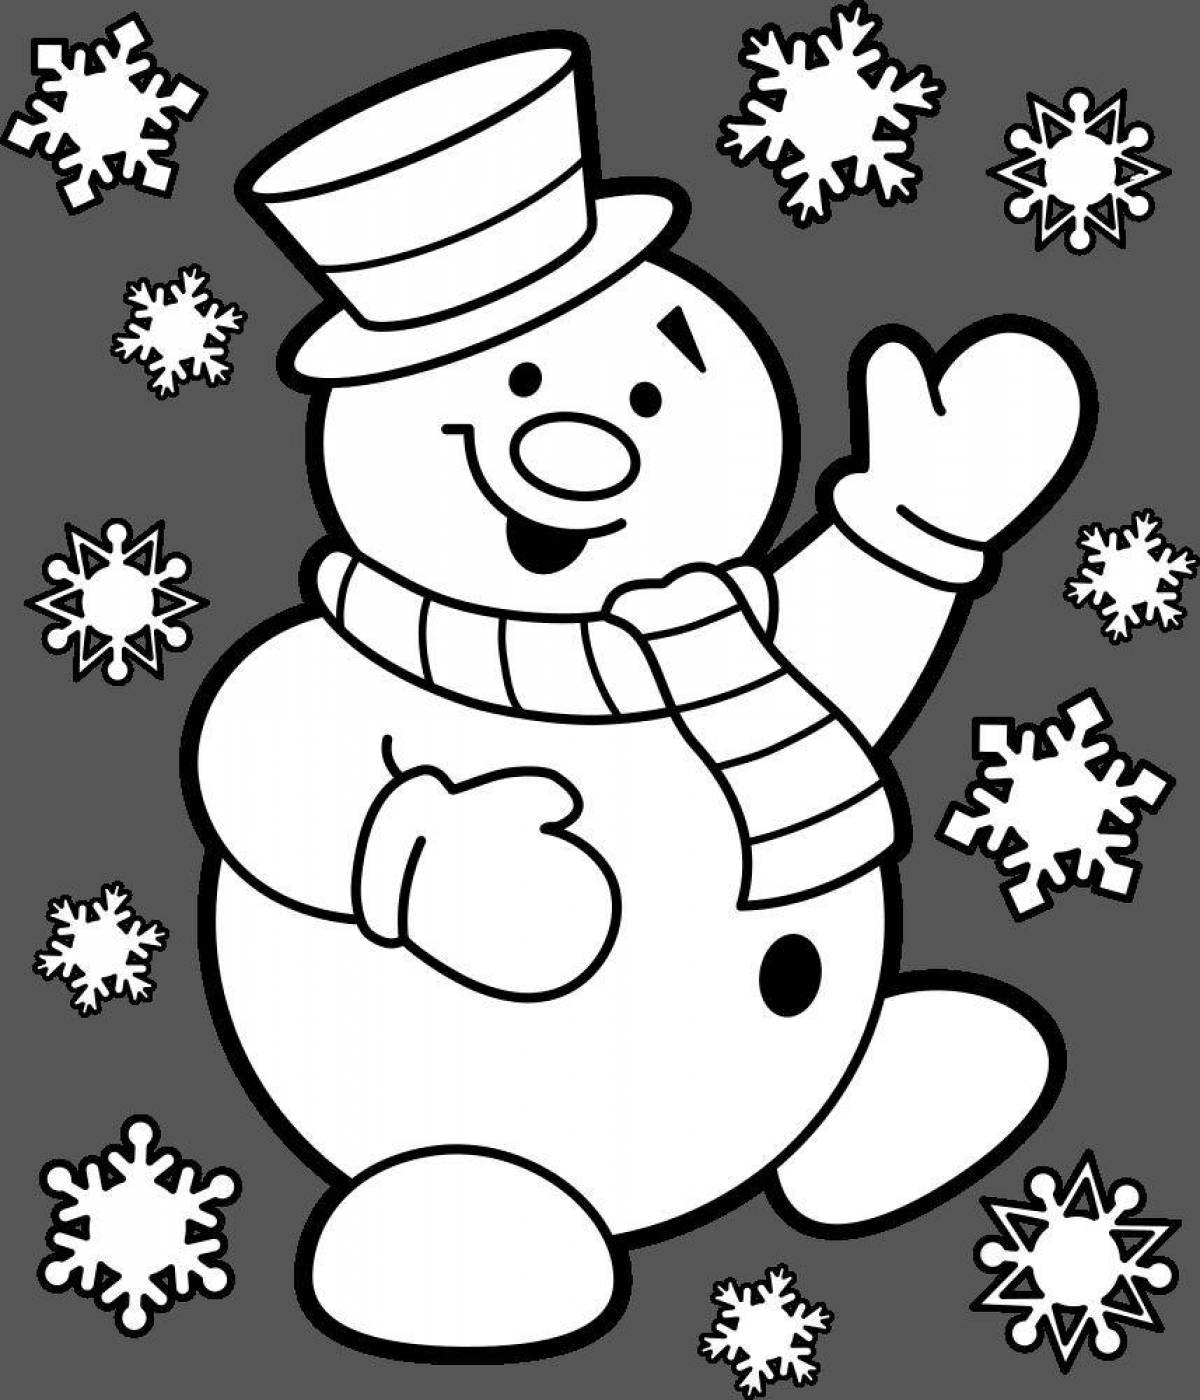 Snowman pattern #4